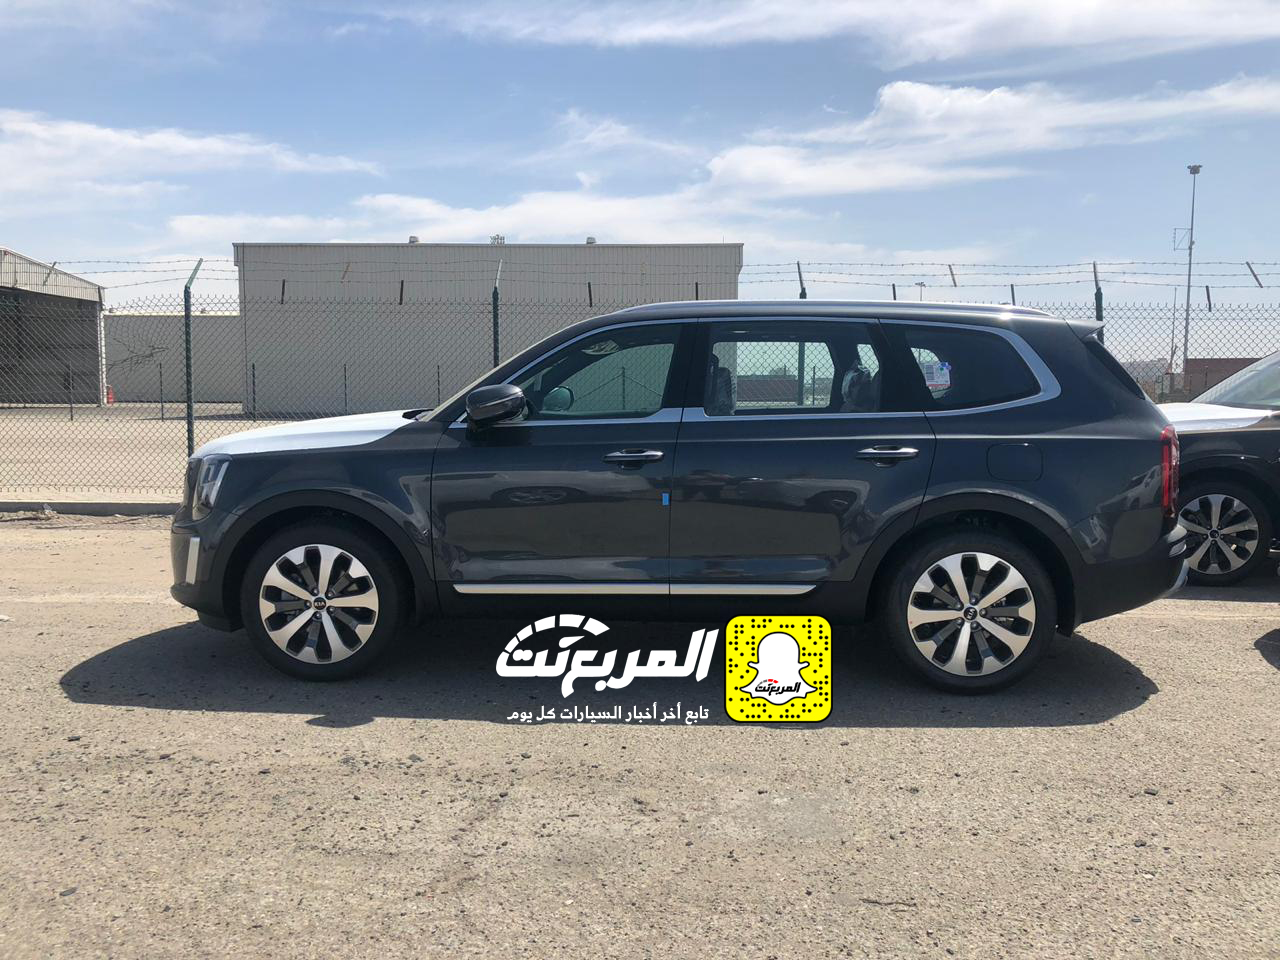 "بالصور" وصول كيا تيلورايد 2020 الجديدة الى السعودية اكبر SUV من كيا + موعد البيع الرسمي 2